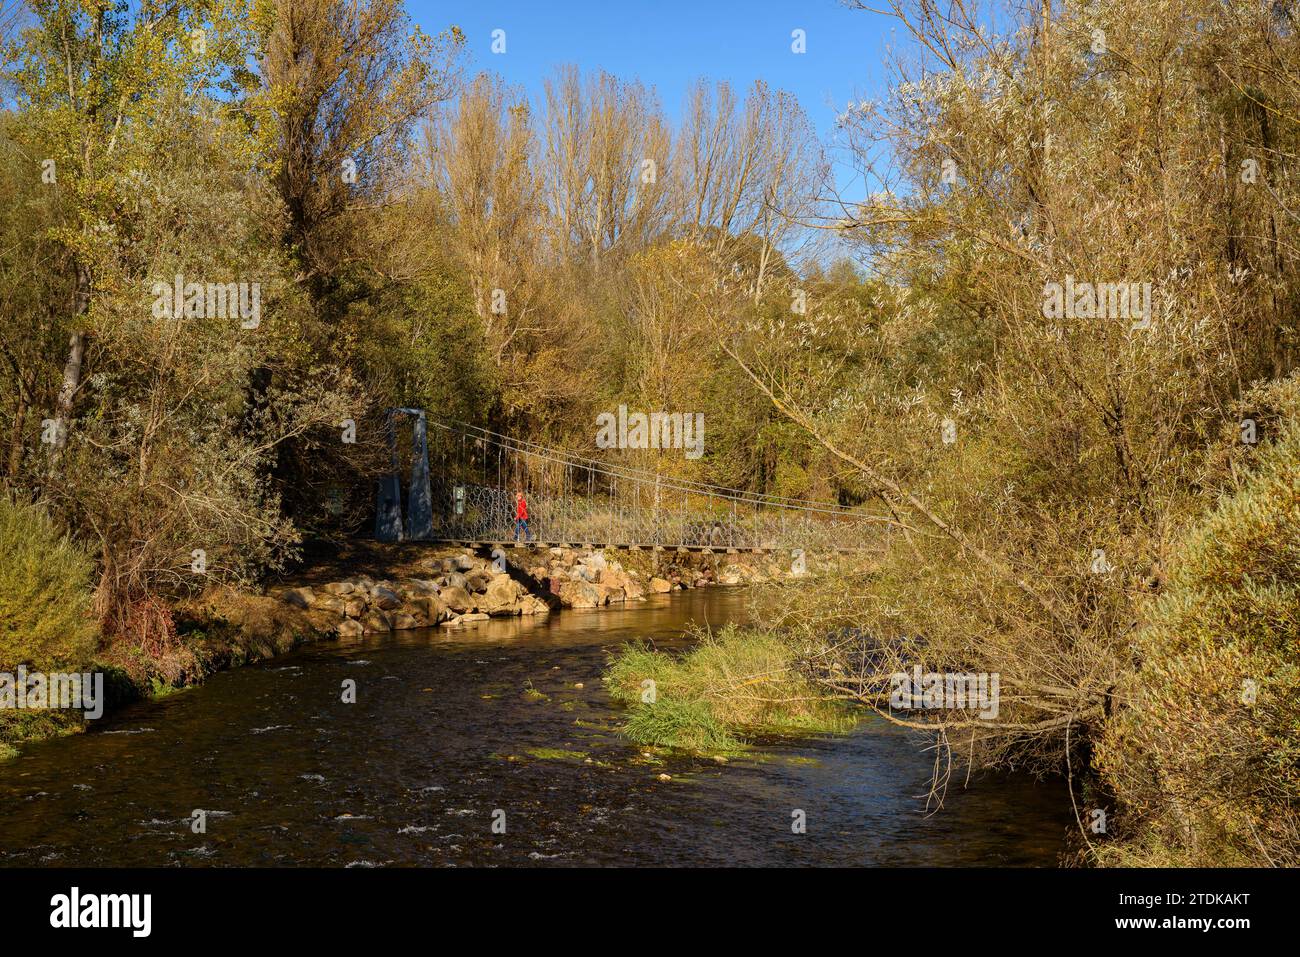 Passerelle suspendue sur la rivière Segre en automne (Cerdanya, Gérone, Catalogne, Espagne, Pyrénées) ESP : Pasarela del puente colgante sobre el Segre Banque D'Images